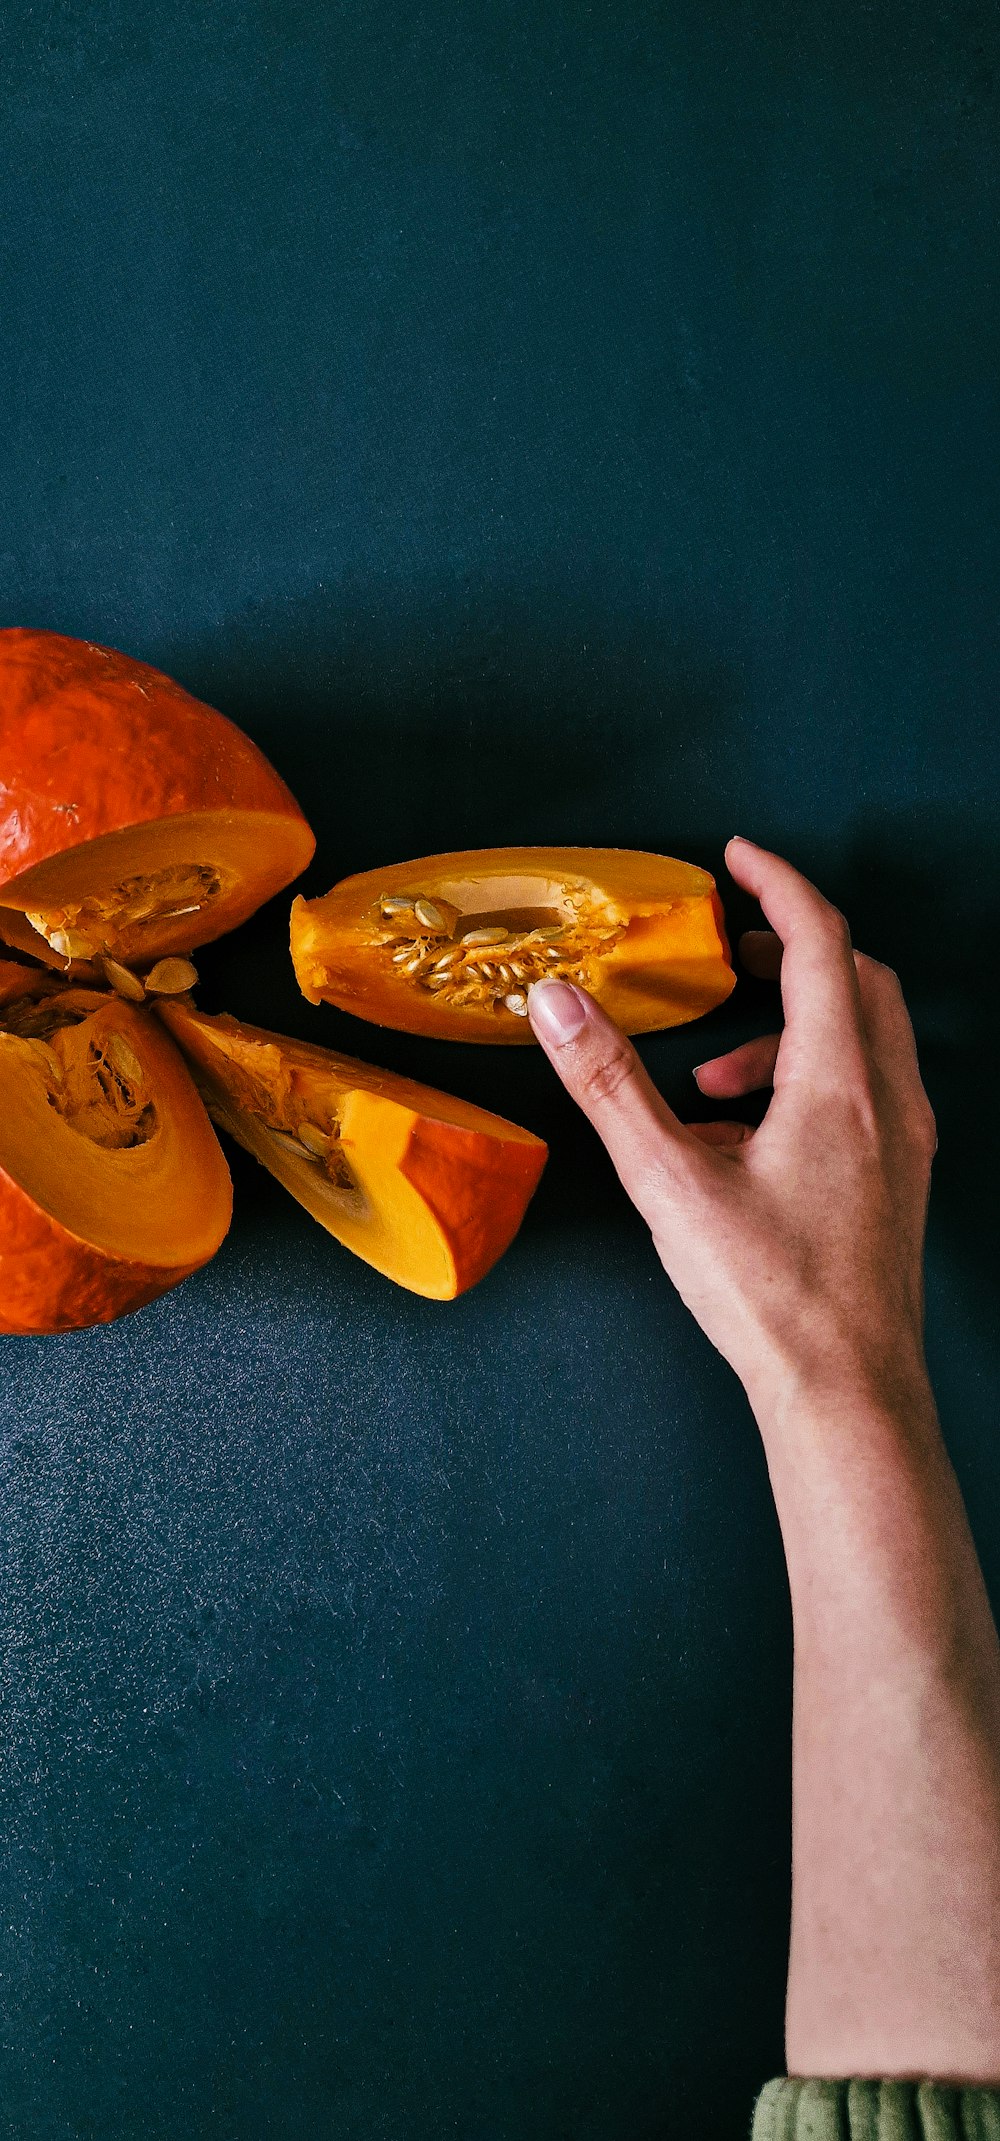 a hand holding a peeled orange